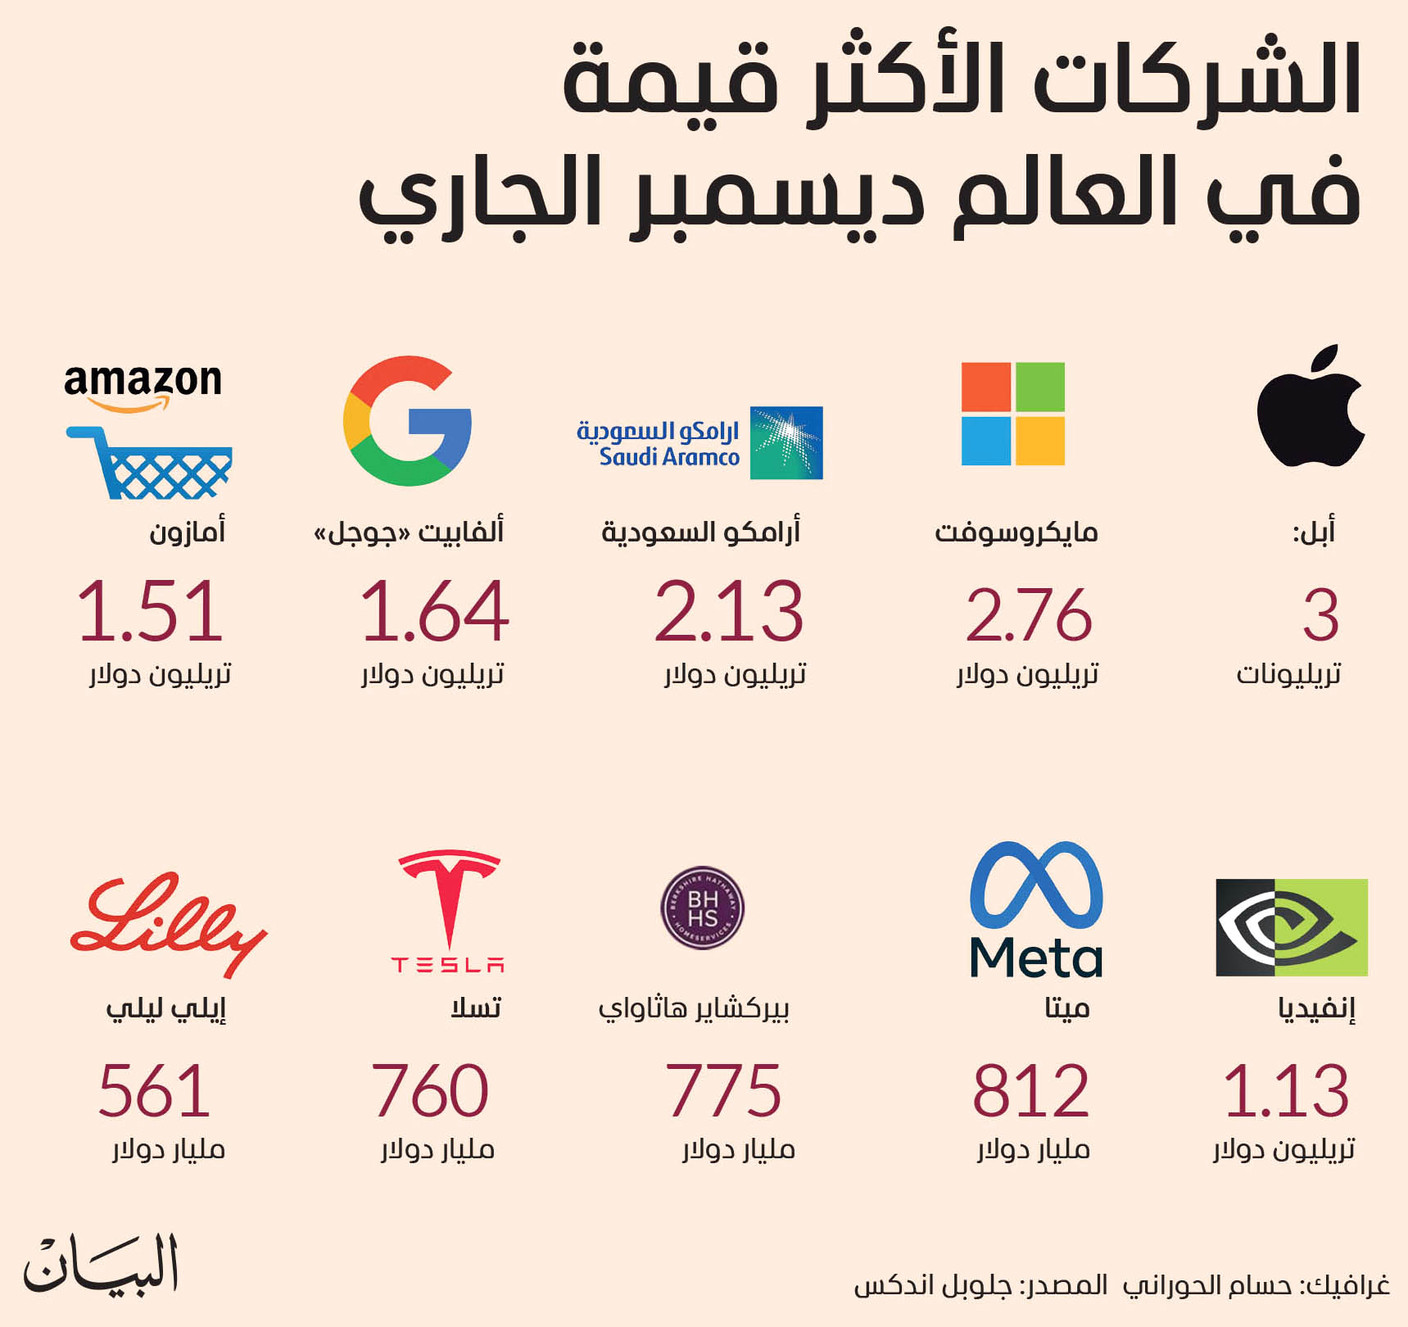 الشركات الأكثر قيمة في العالم ديسمبر الجاري